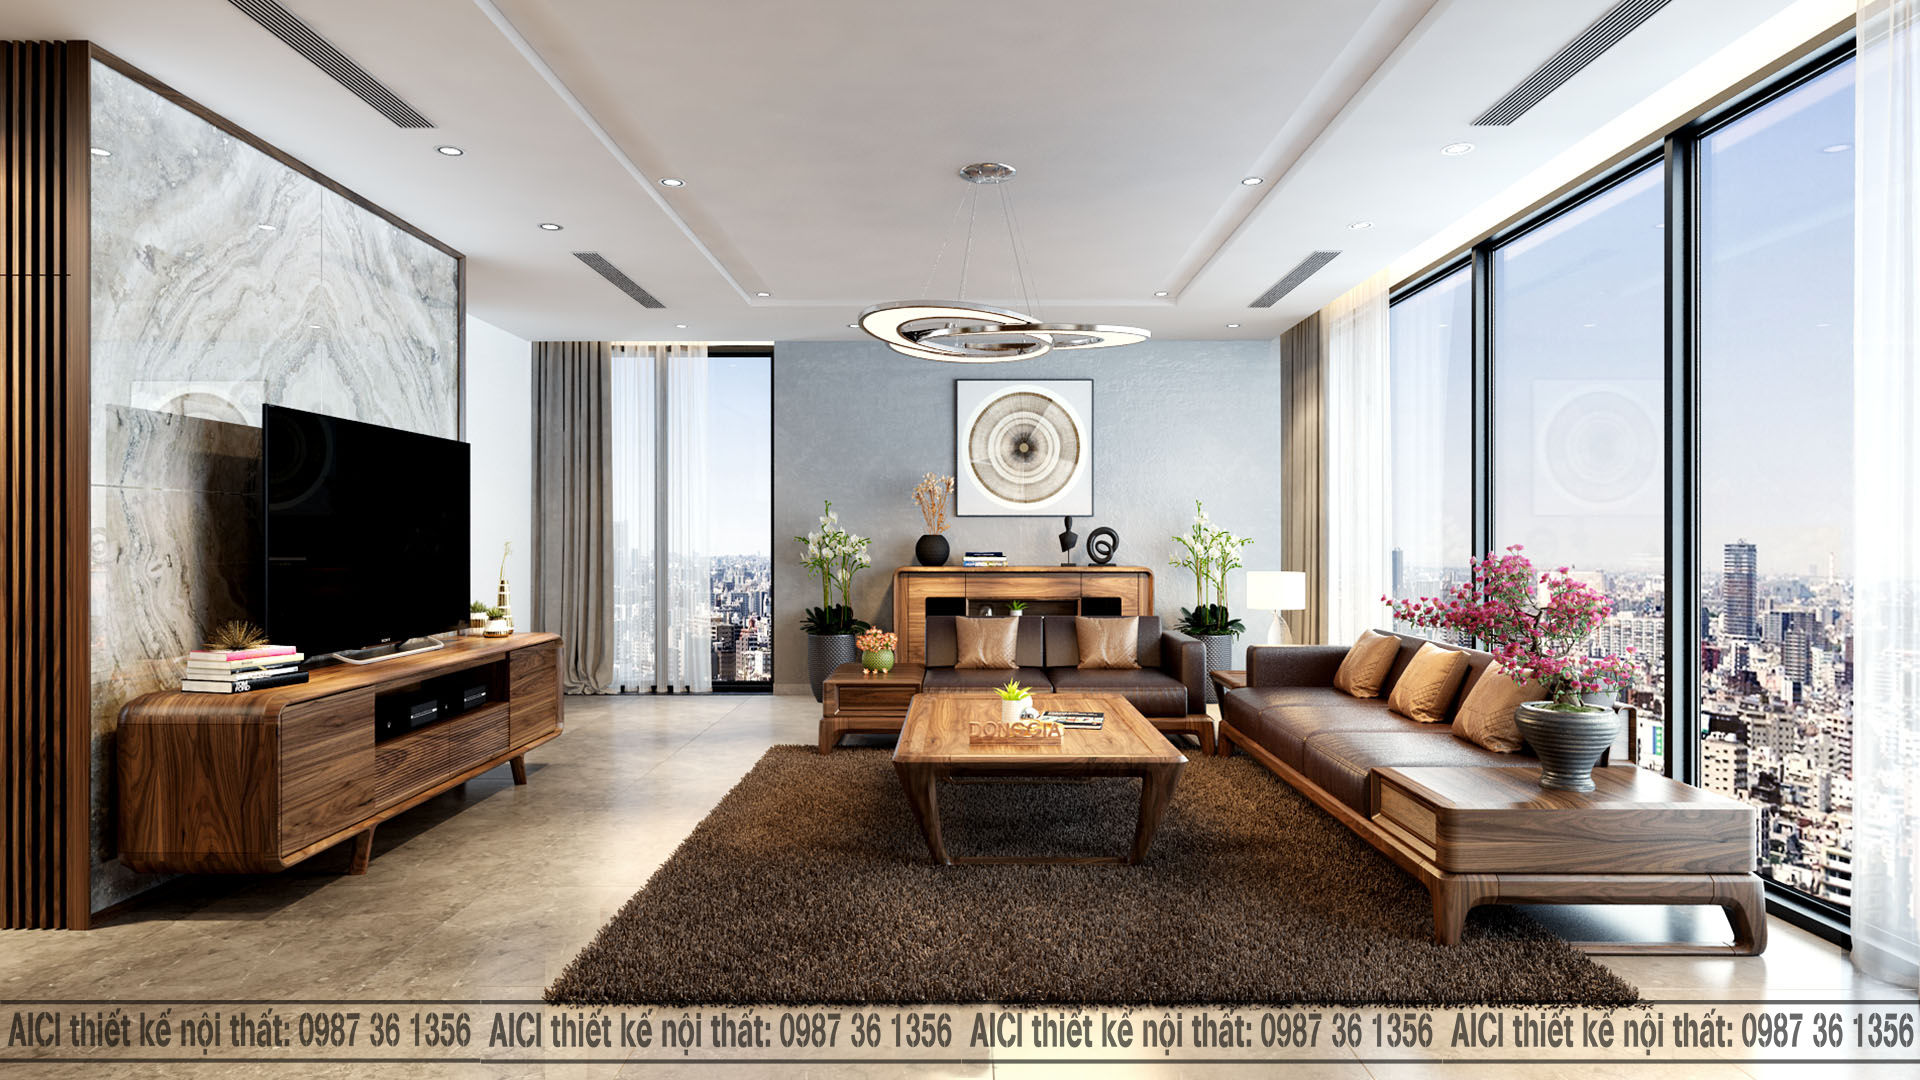 Mẫu thiết kế nội thất chung cư đẹp hiện đại CĐT ông Hồng  Đà Nẵng  NT21043